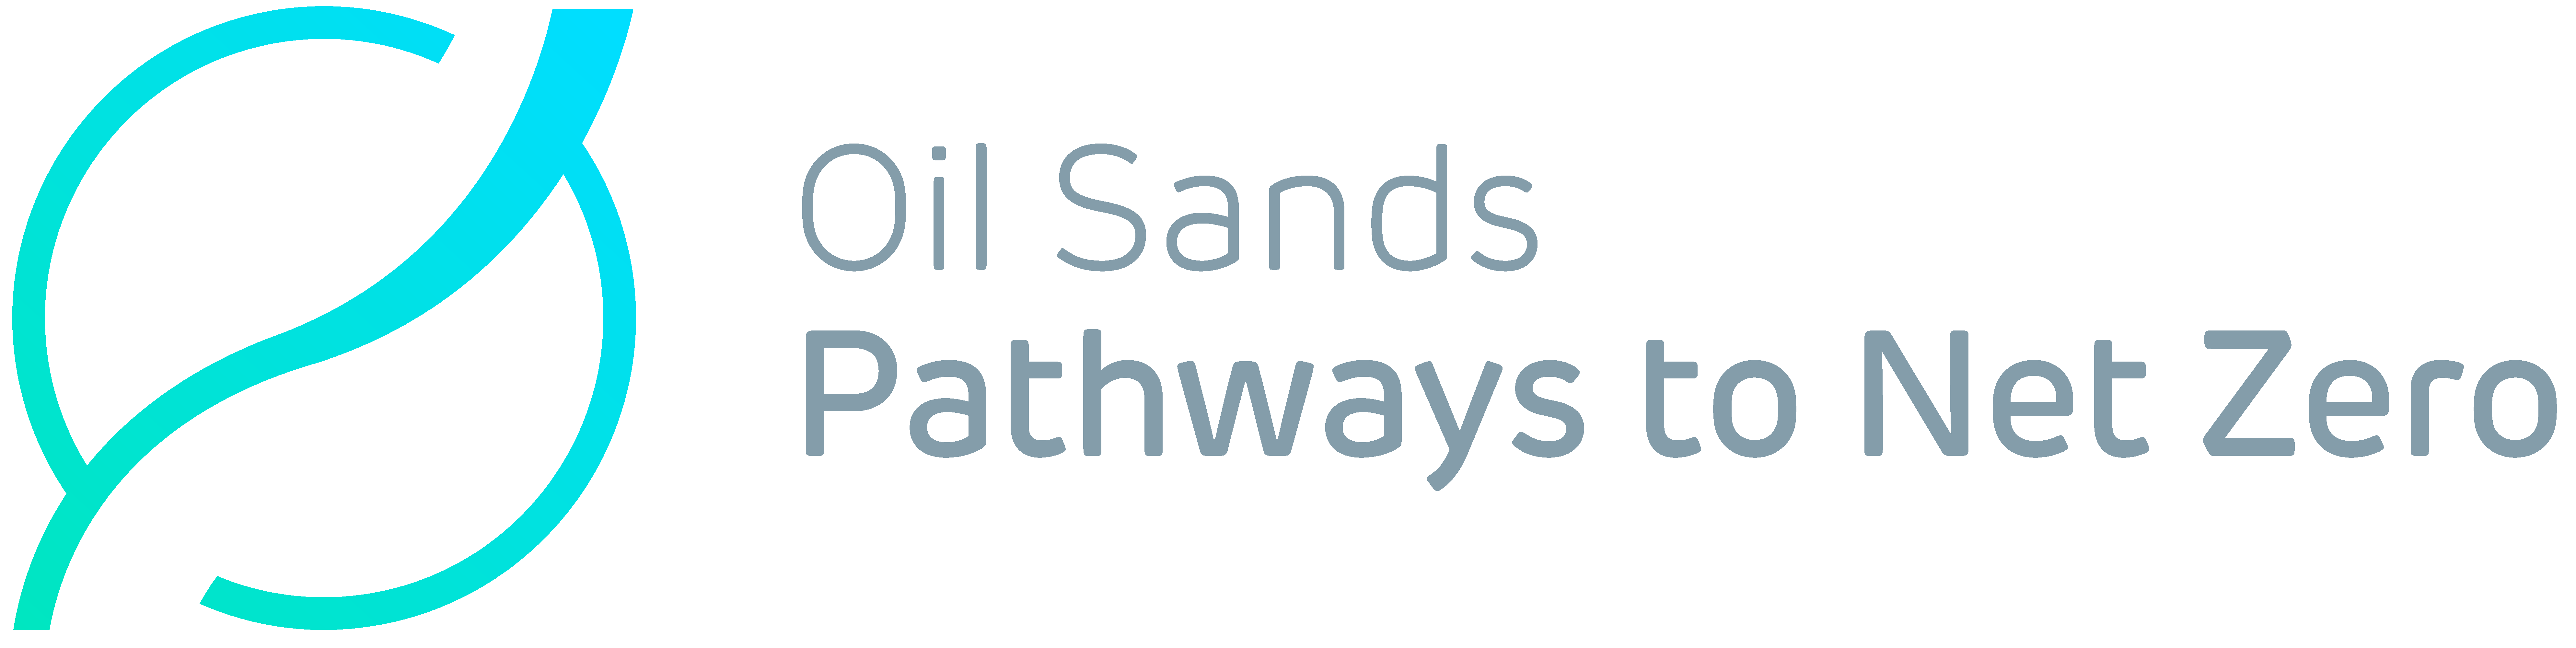 Oil Sands Pathways to Net Zero